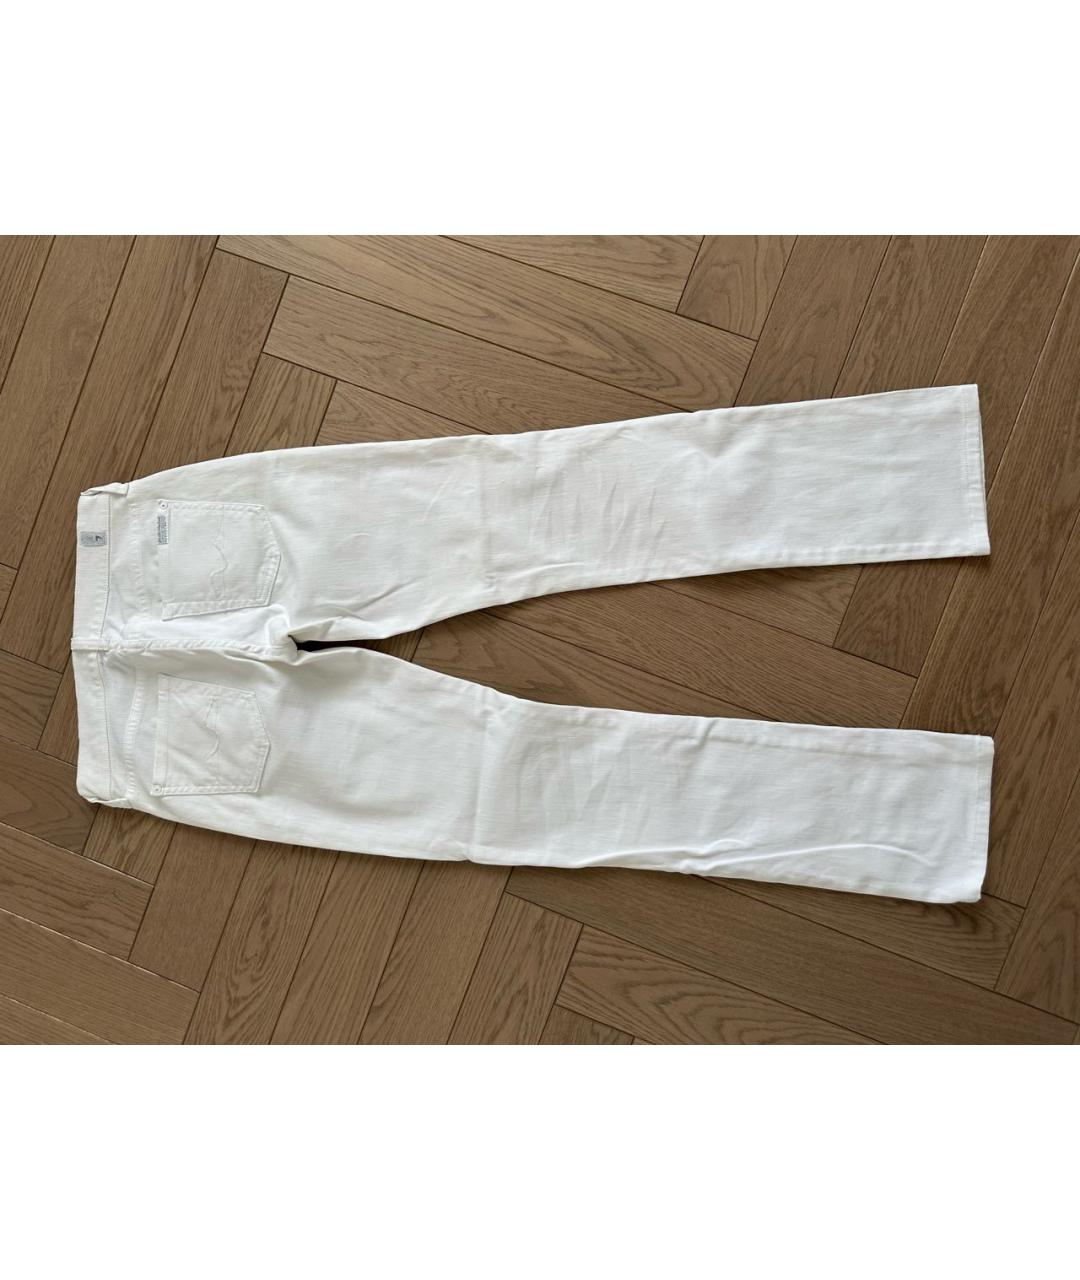 7 FOR ALL MANKIND Белые хлопковые прямые джинсы, фото 2